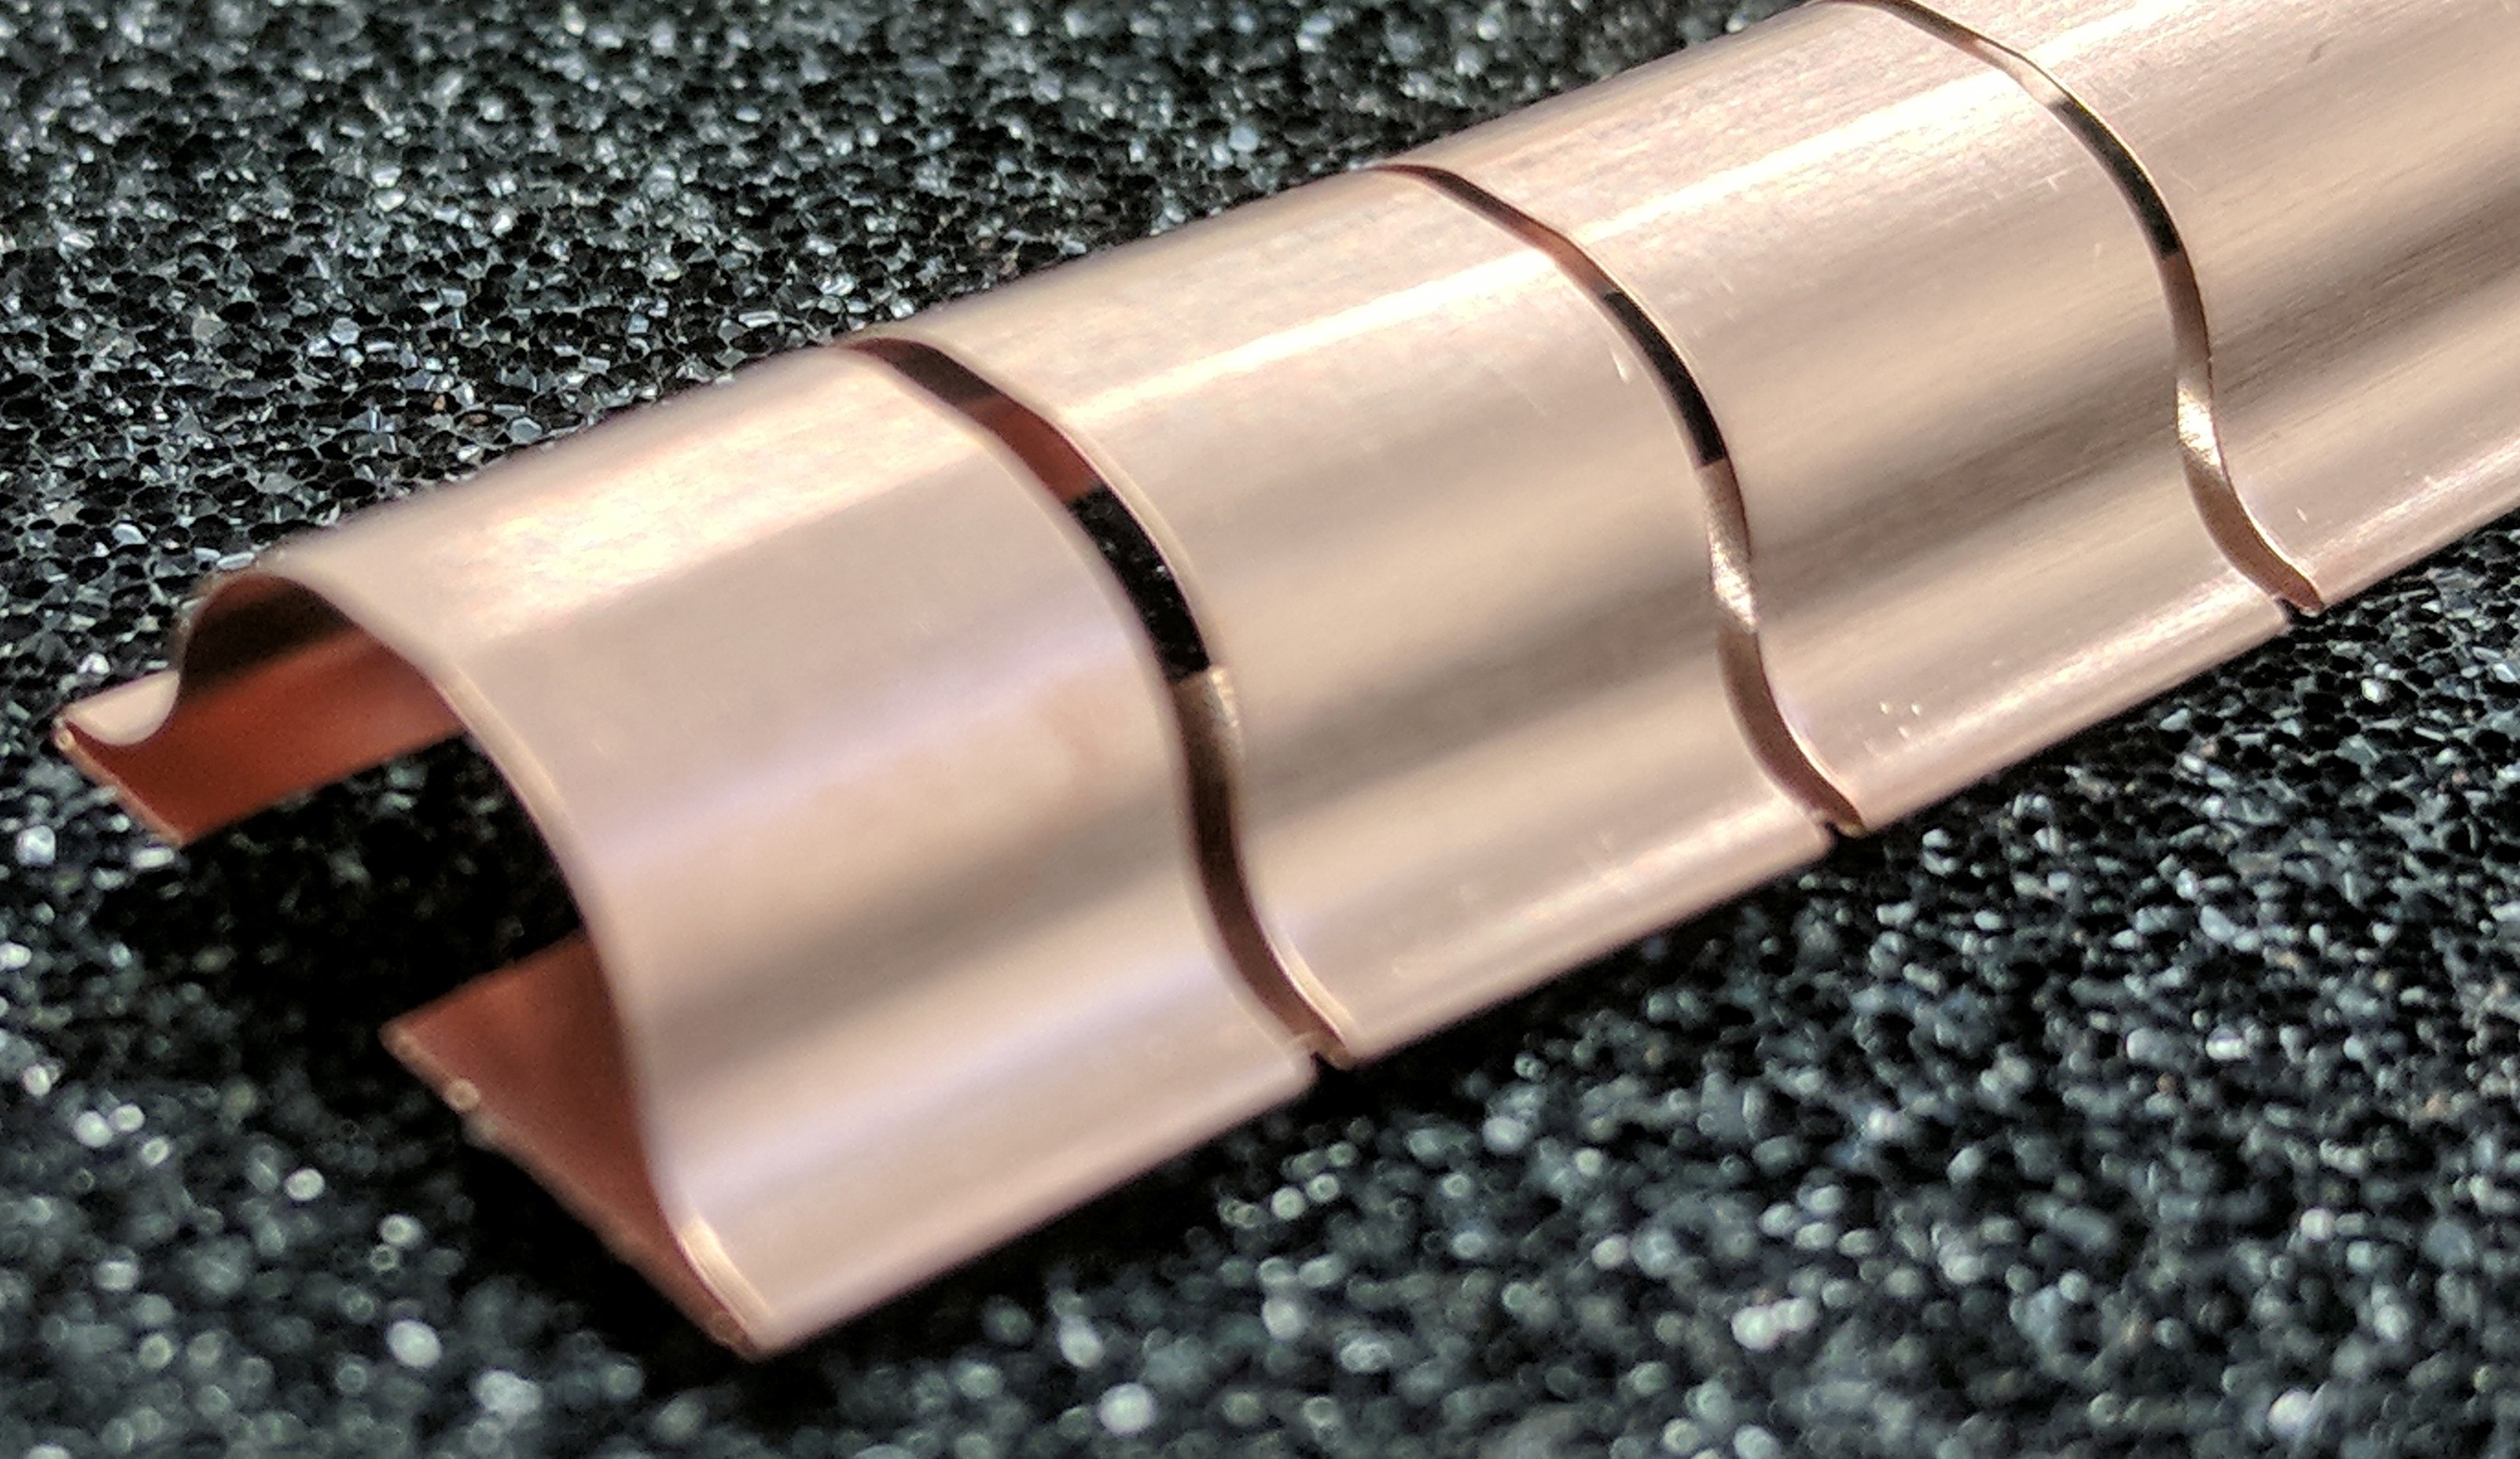 ECP 657 Beryllium Copper (Be/cu) Fingerstrip 15.24mm x 5.59mm (WxH)